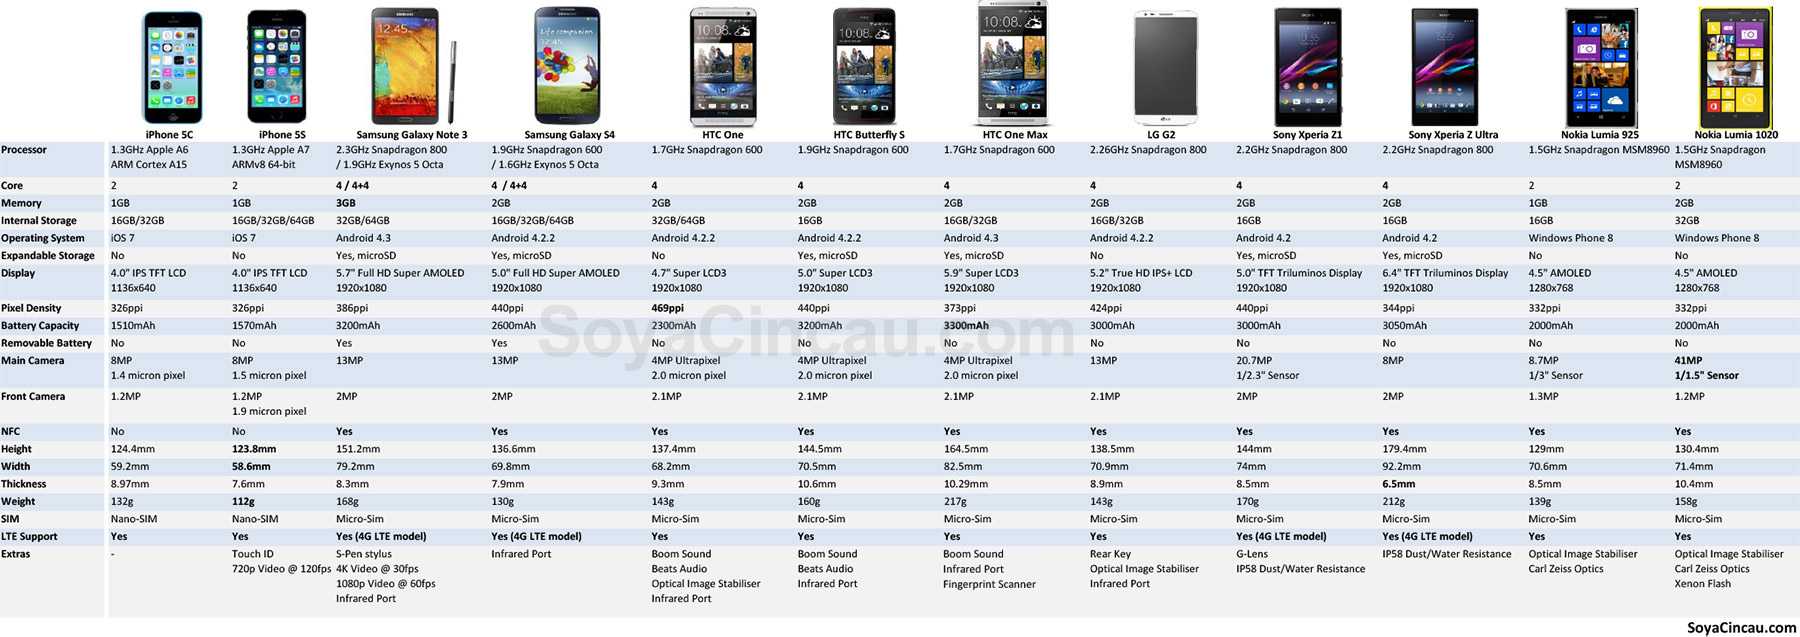 Iphone 6 plus характеристики - подробно о главном